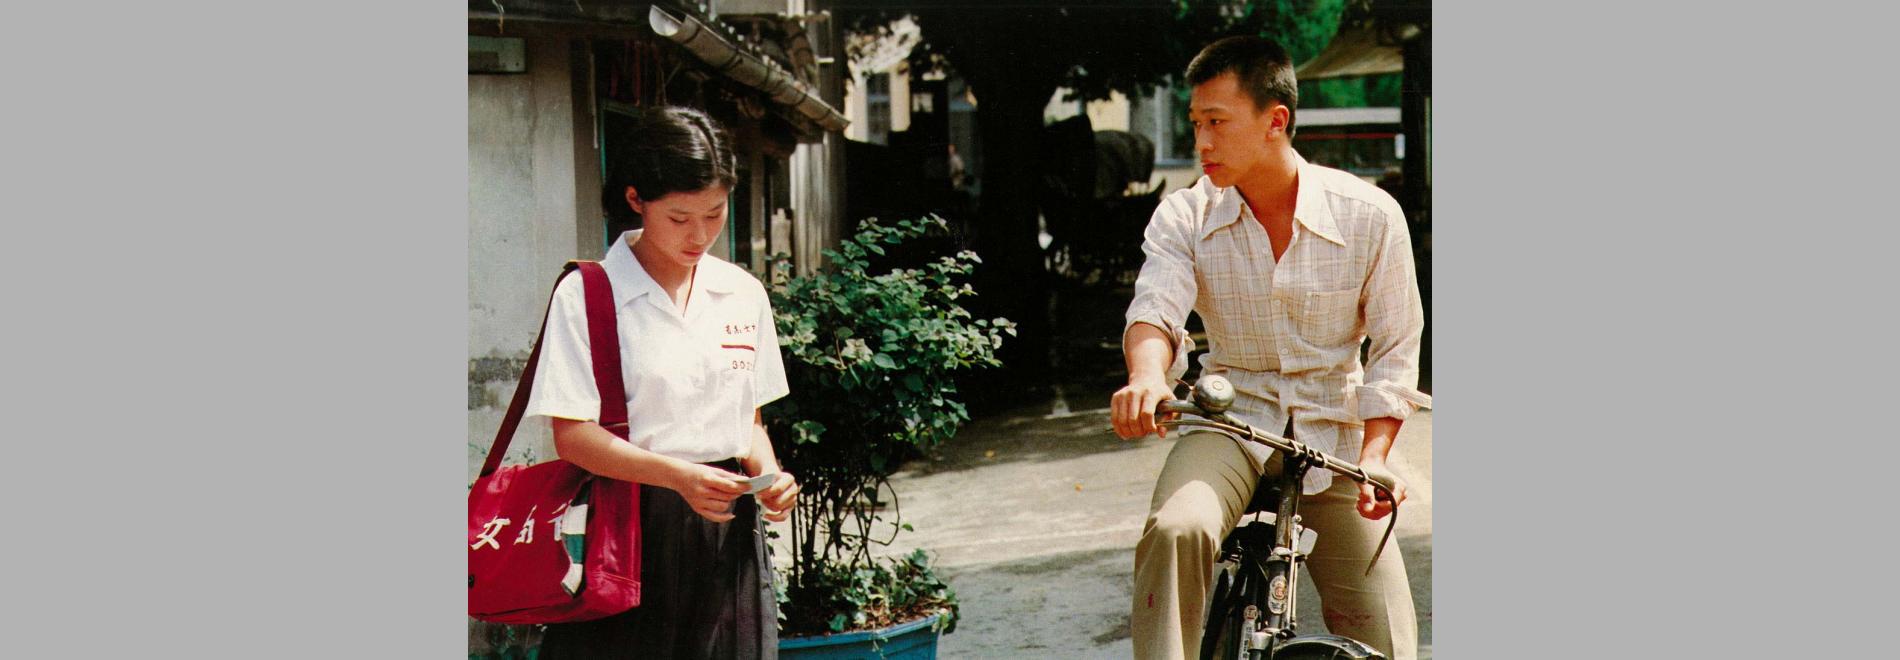 Tong nien wang shi / Temps de viure, temps de morir (Hou Hsiao-hsien, 1985)